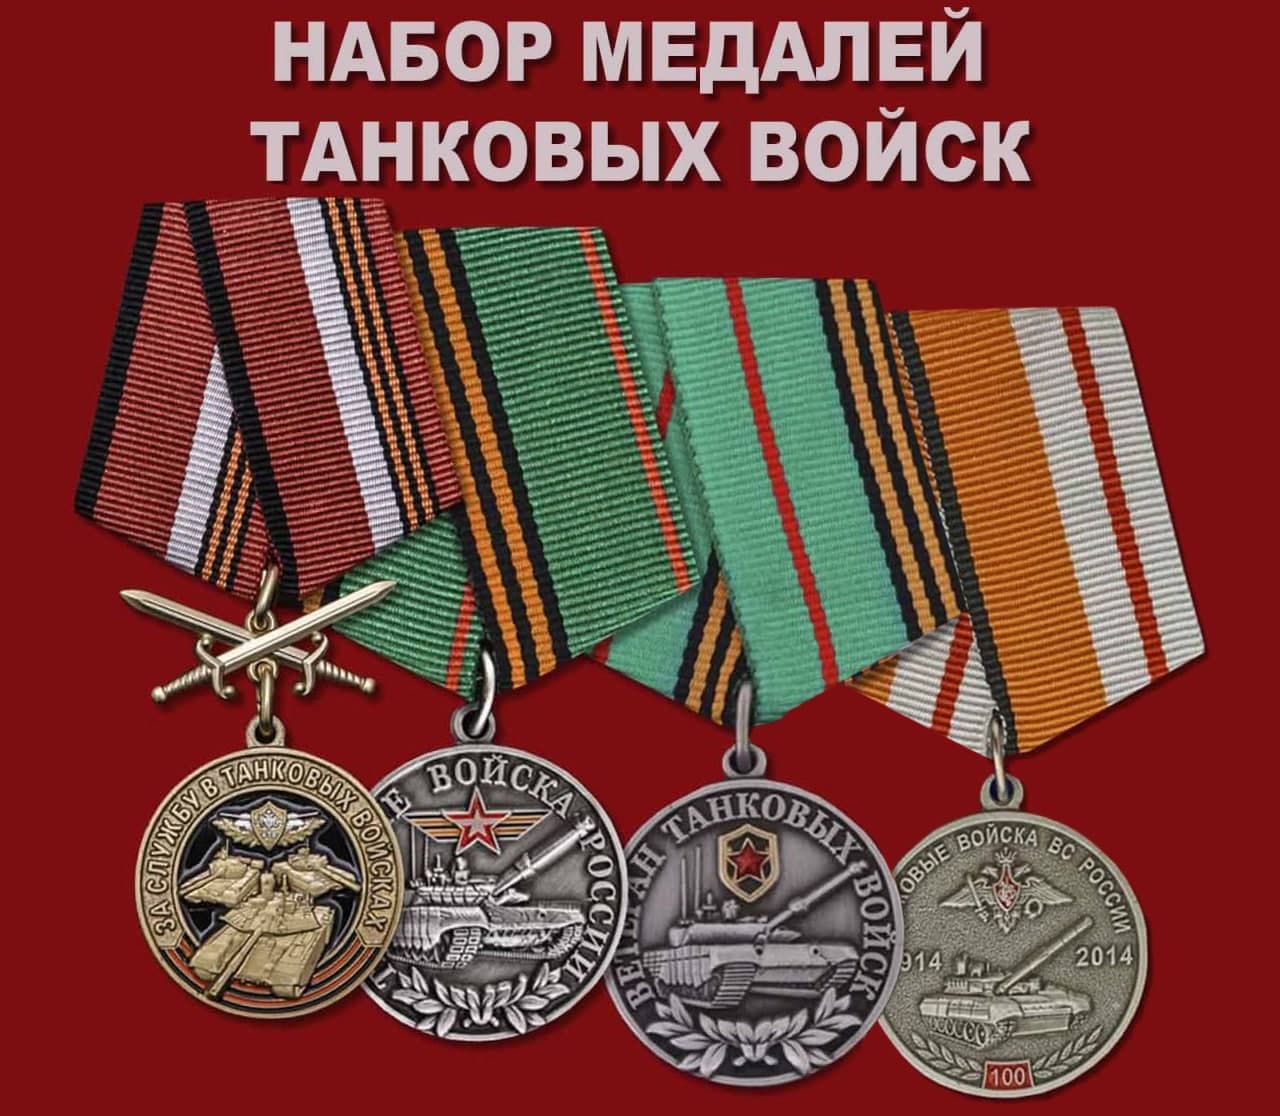 Купить набор медалей Танковых войск